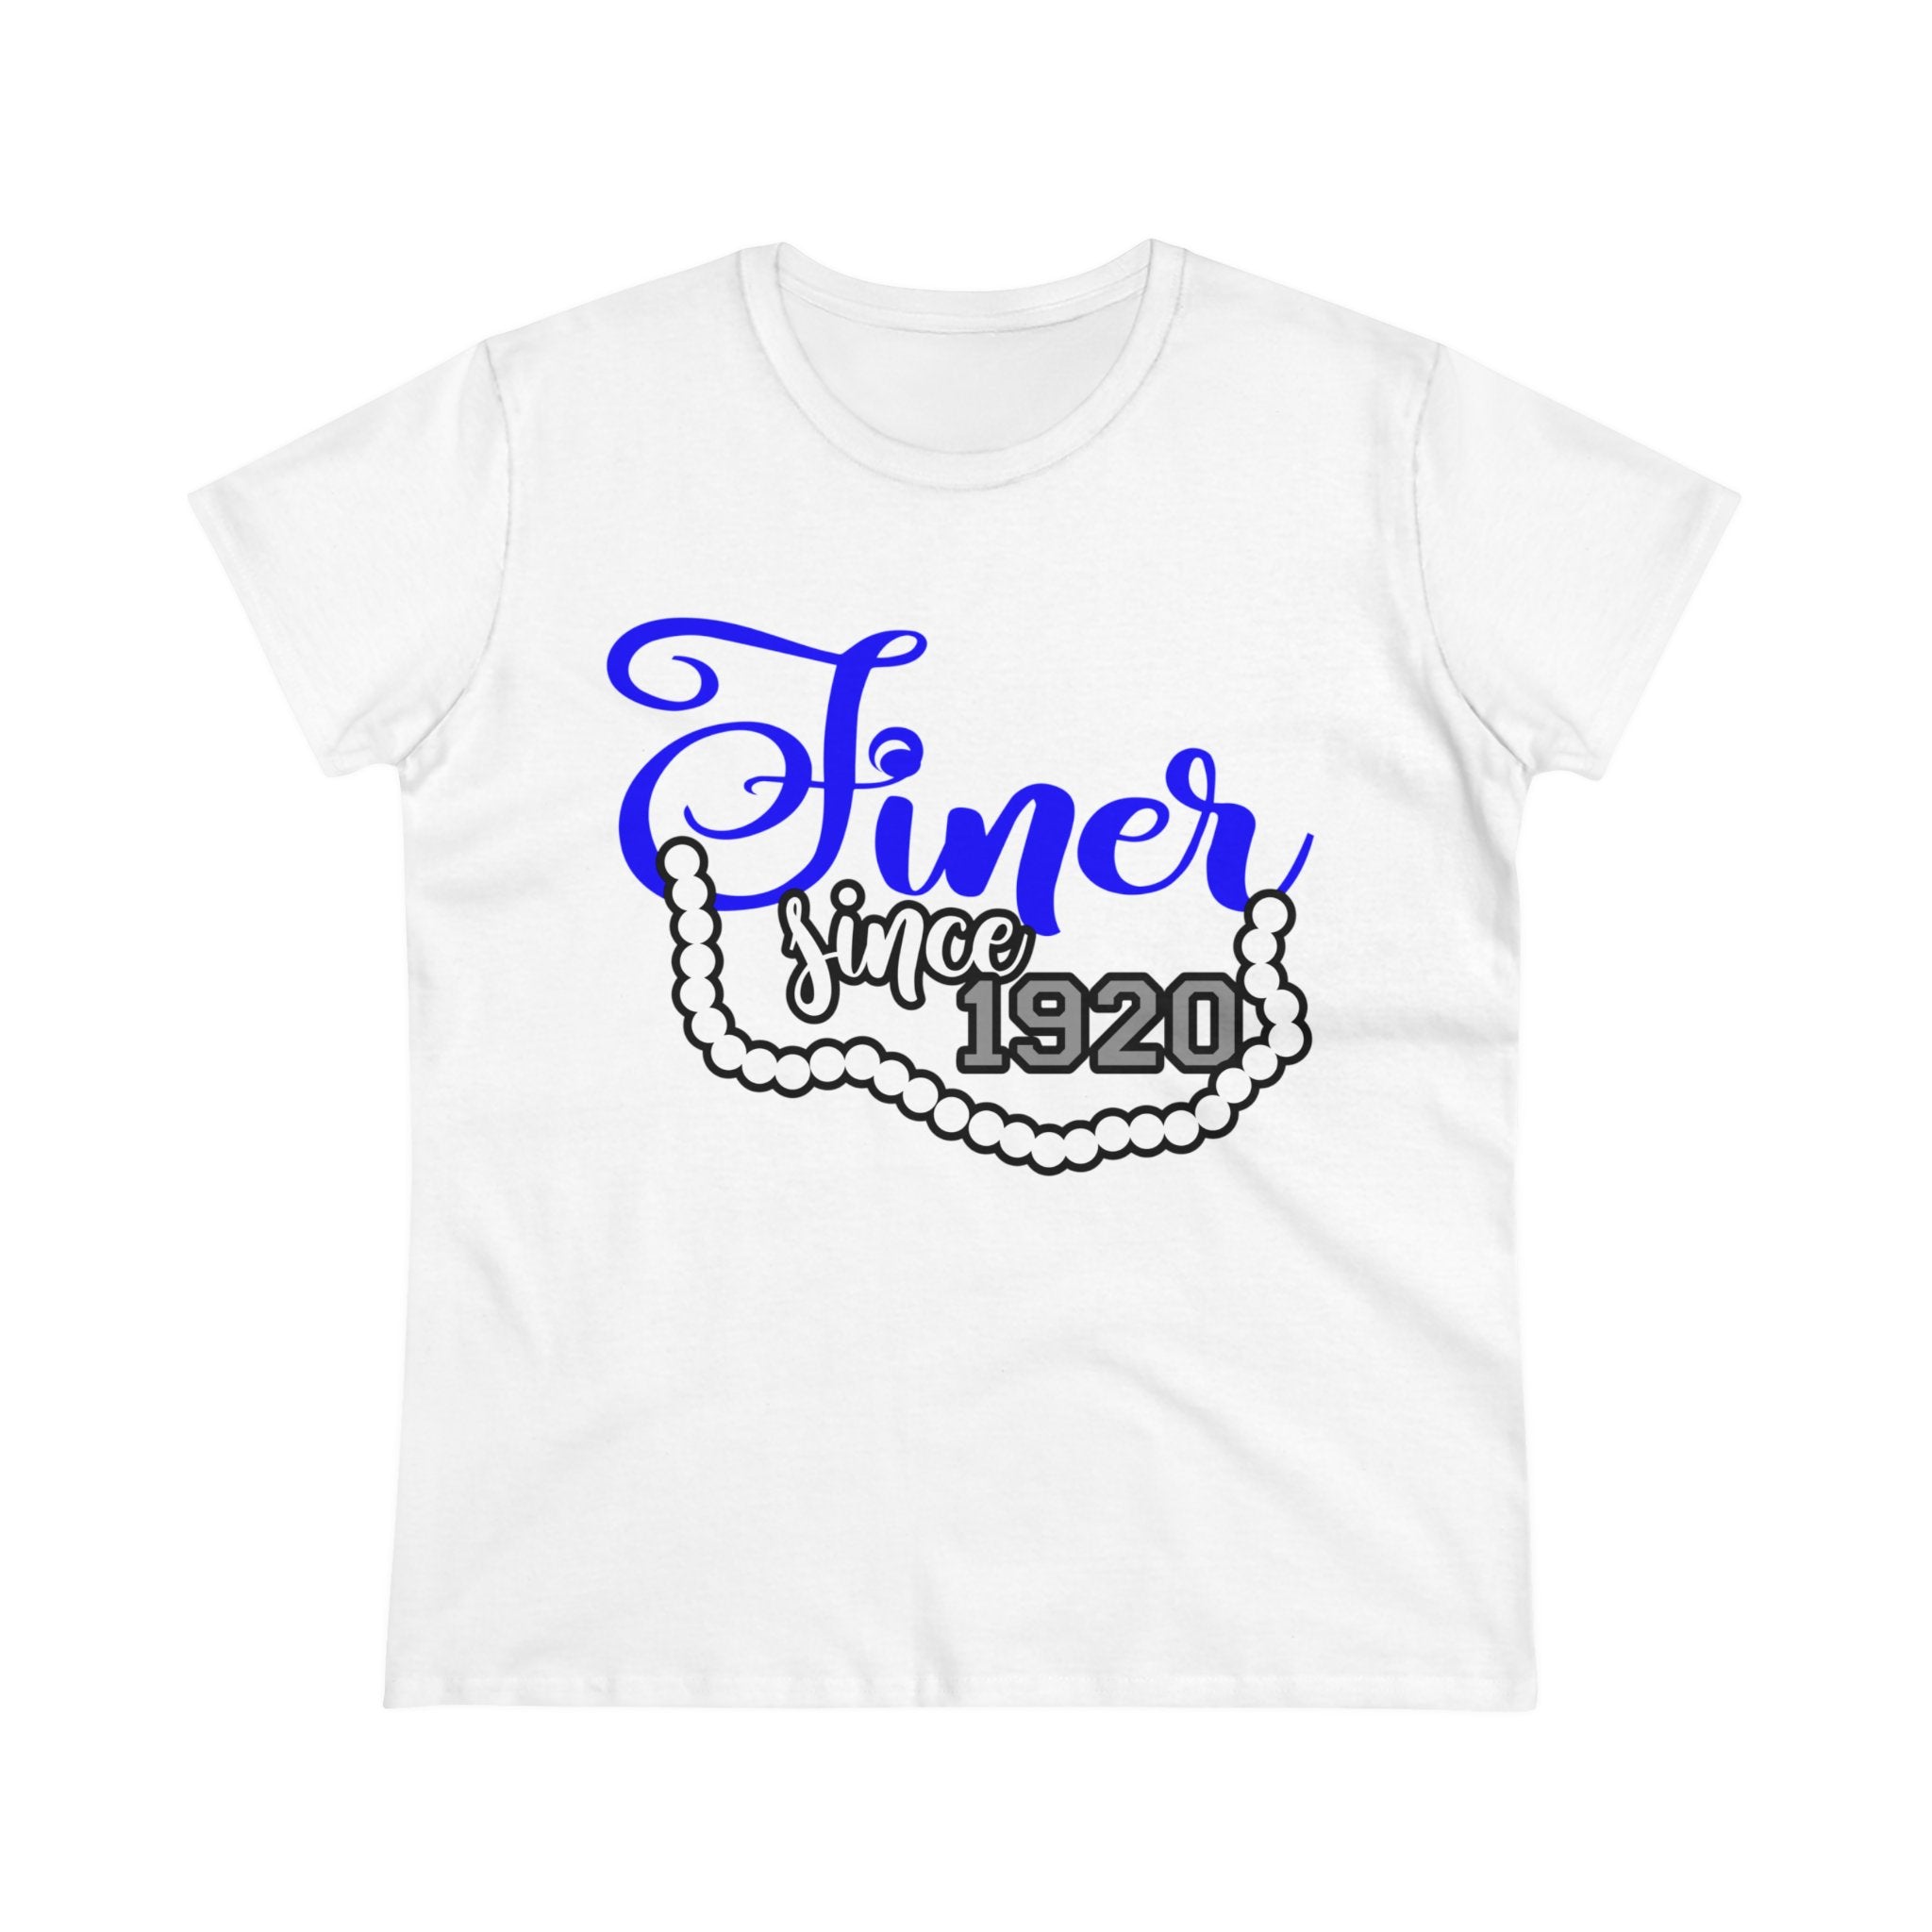 Finer Since 1920 Women's Shirt